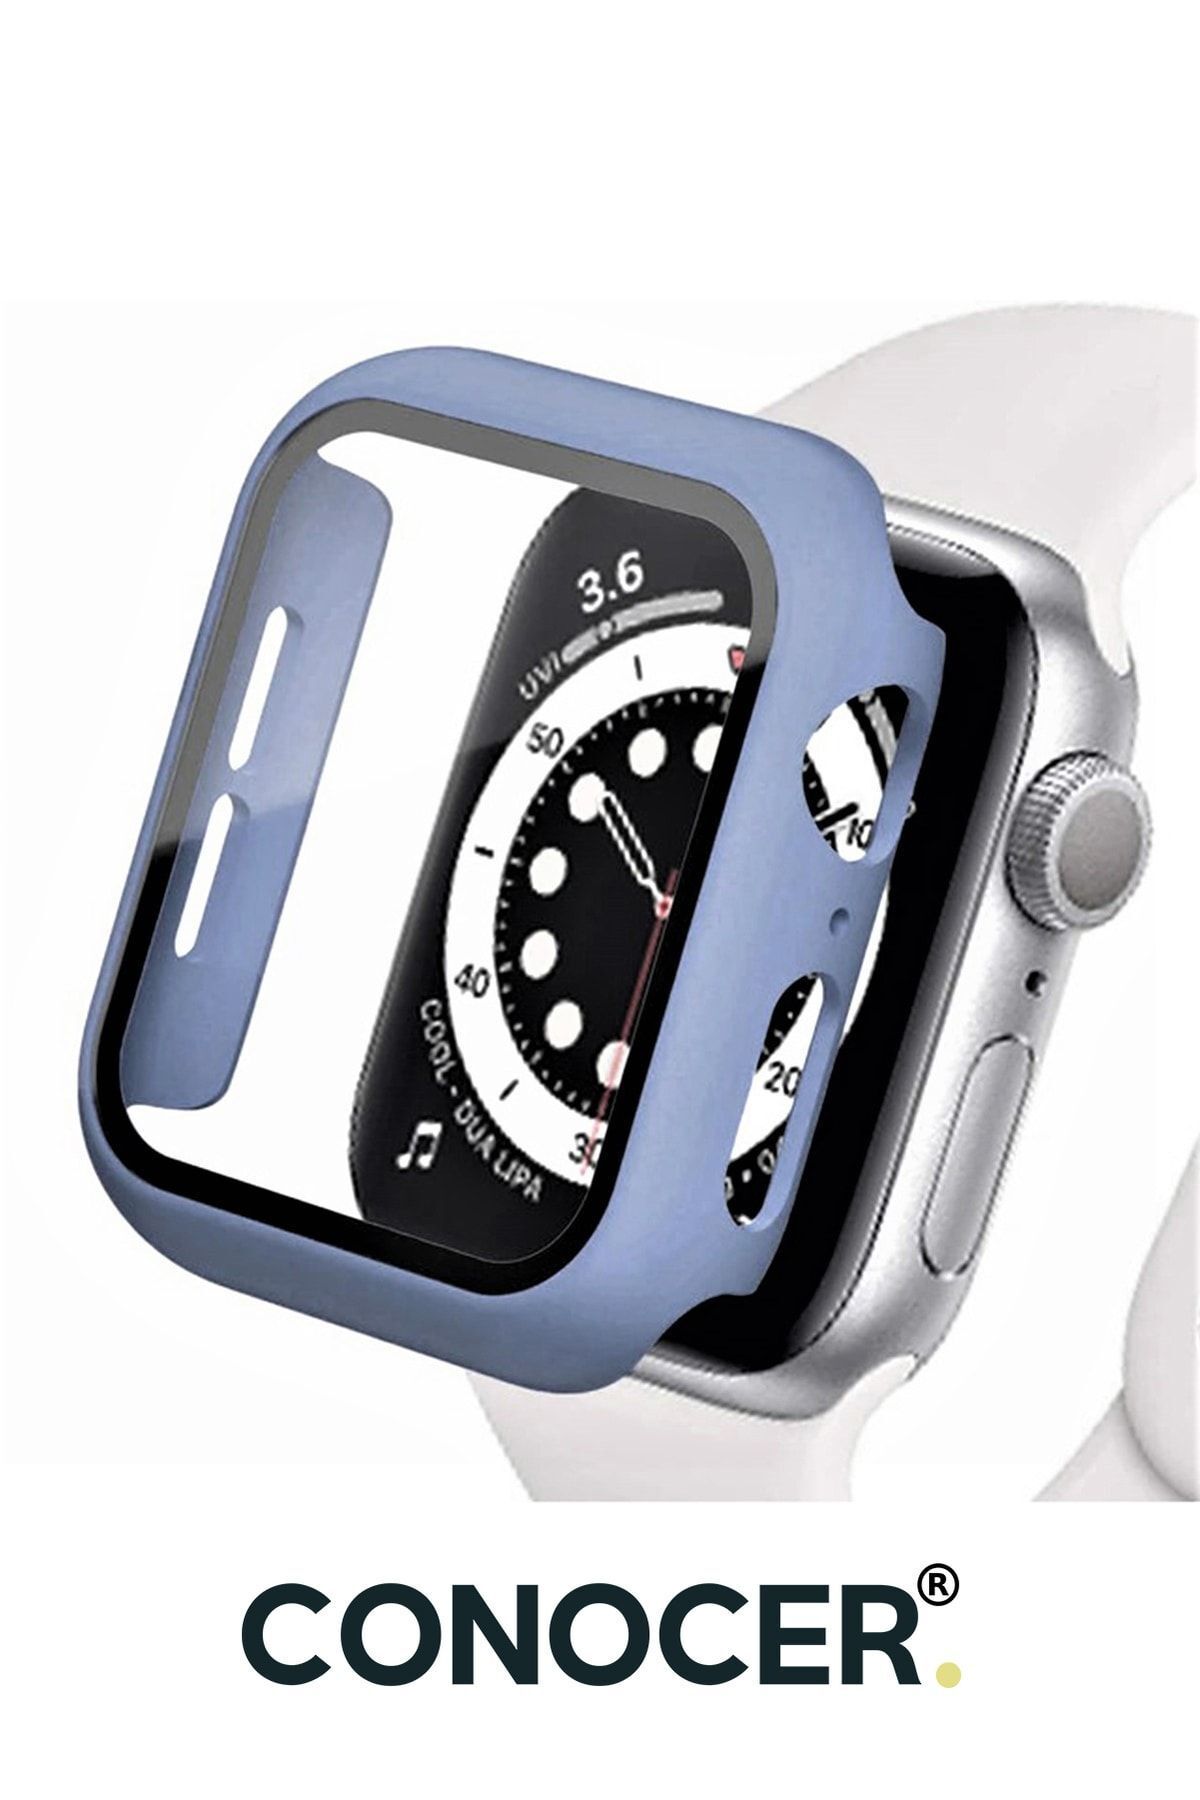 CONOCER Apple Watch 1-2-3-4-5-6-se (38 MM) Uyumlu Kılıf Kasa Ve Ekran Koruyucu